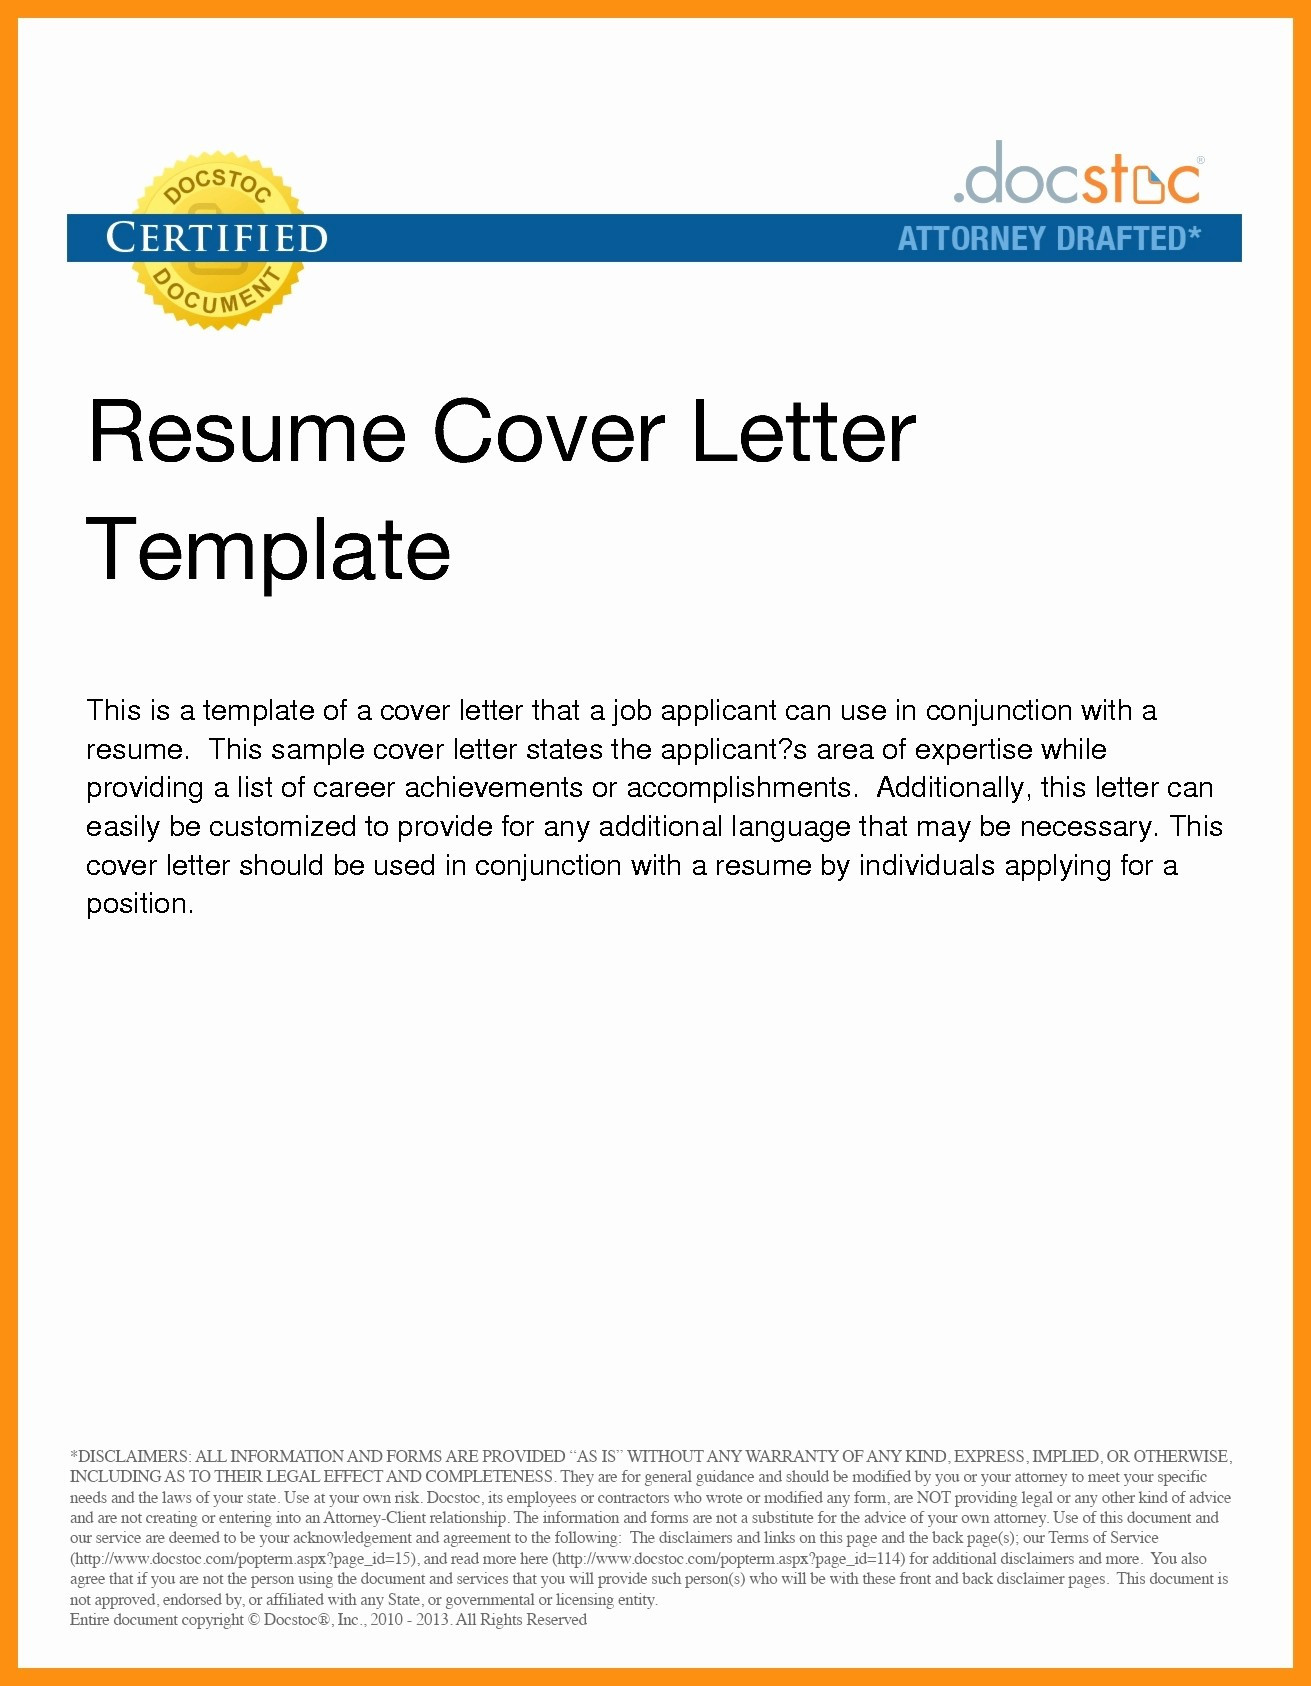 Sample Email Cover Letter for Sending Resume Sending Resume and Cover Letter by Email Collection